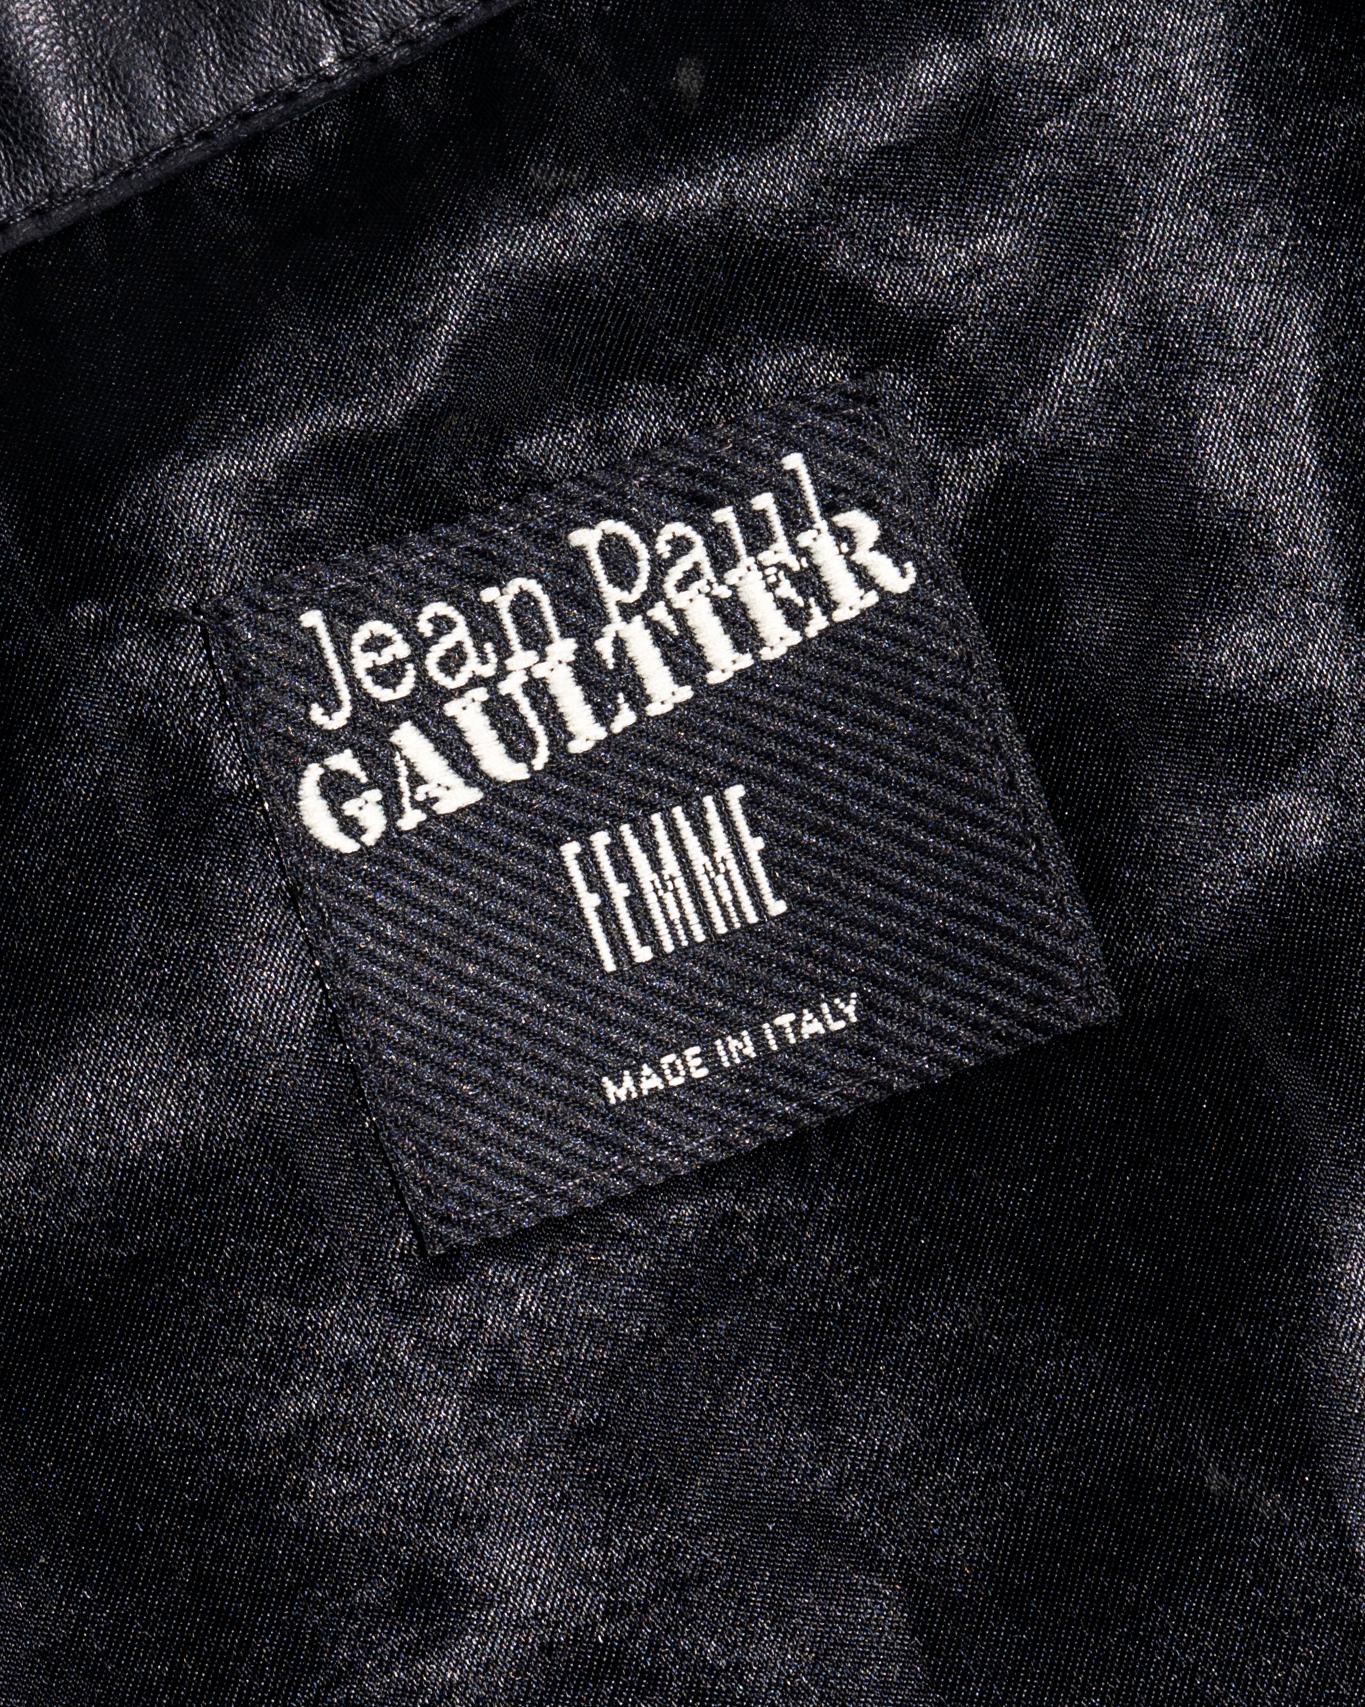 Jean Paul Gaultier leather trompe l'oeil print cropped bolero jacket, ss 2001 2